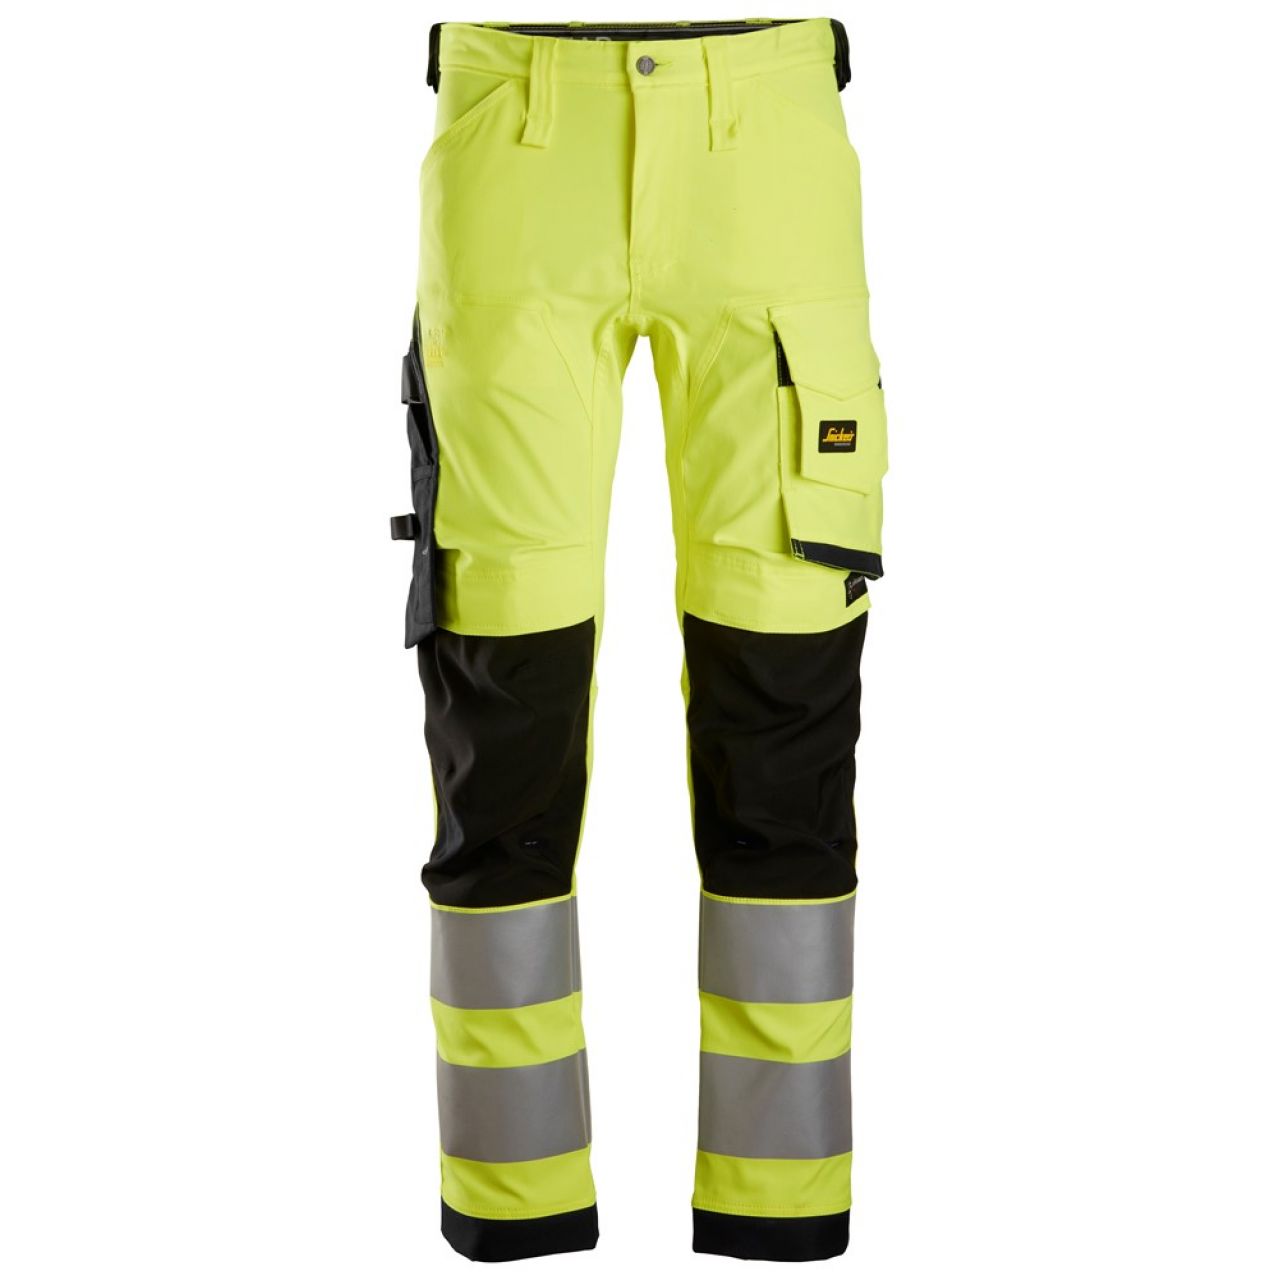 6343 Pantalones largos de trabajo elásticos de alta visibilidad clase 2 amarillo-negro talla 258